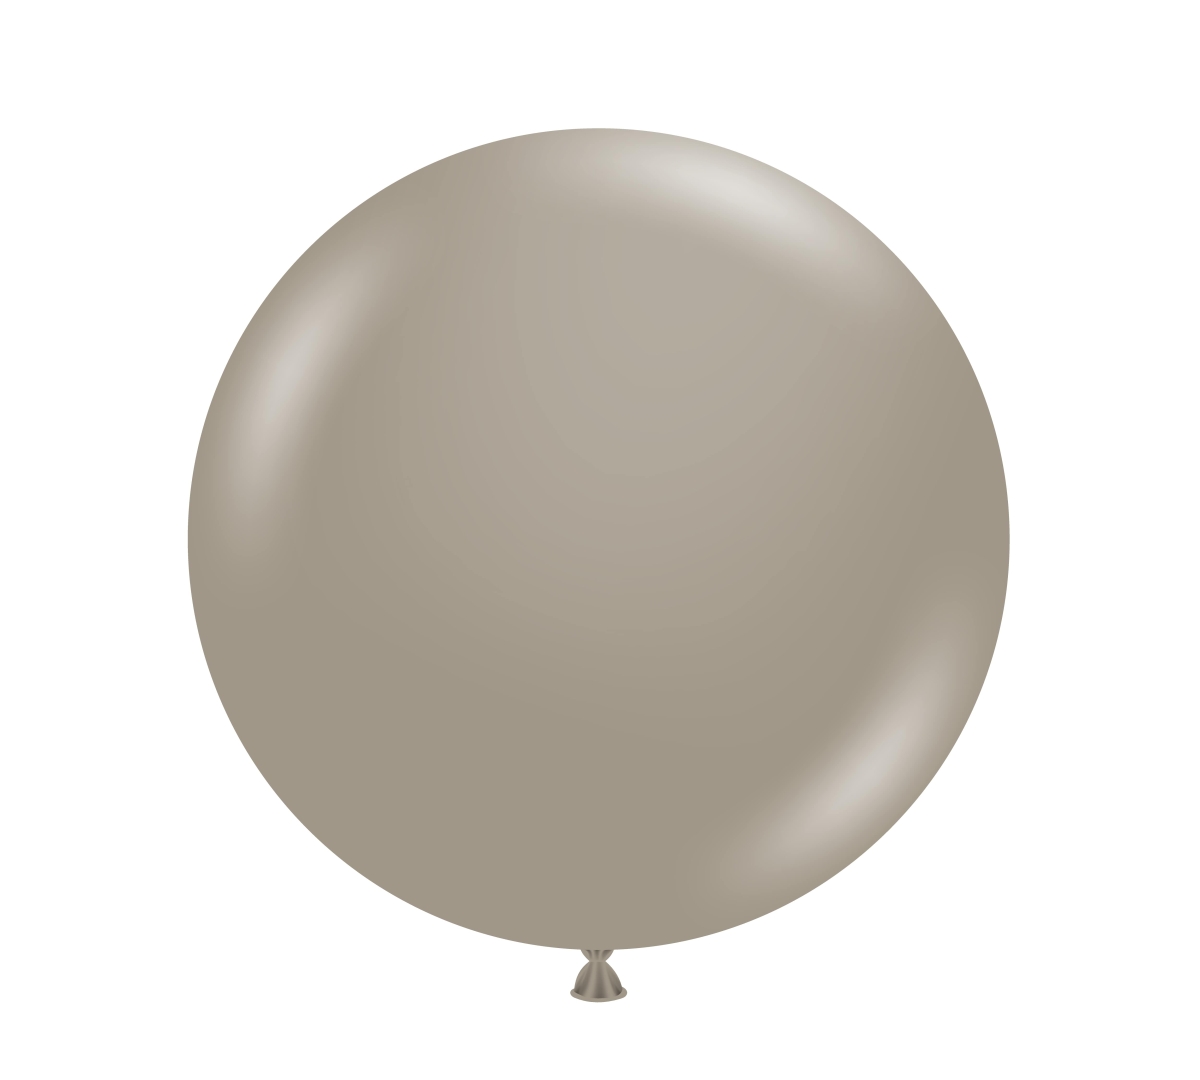 TUFTEX (1) 24" Malted balloon